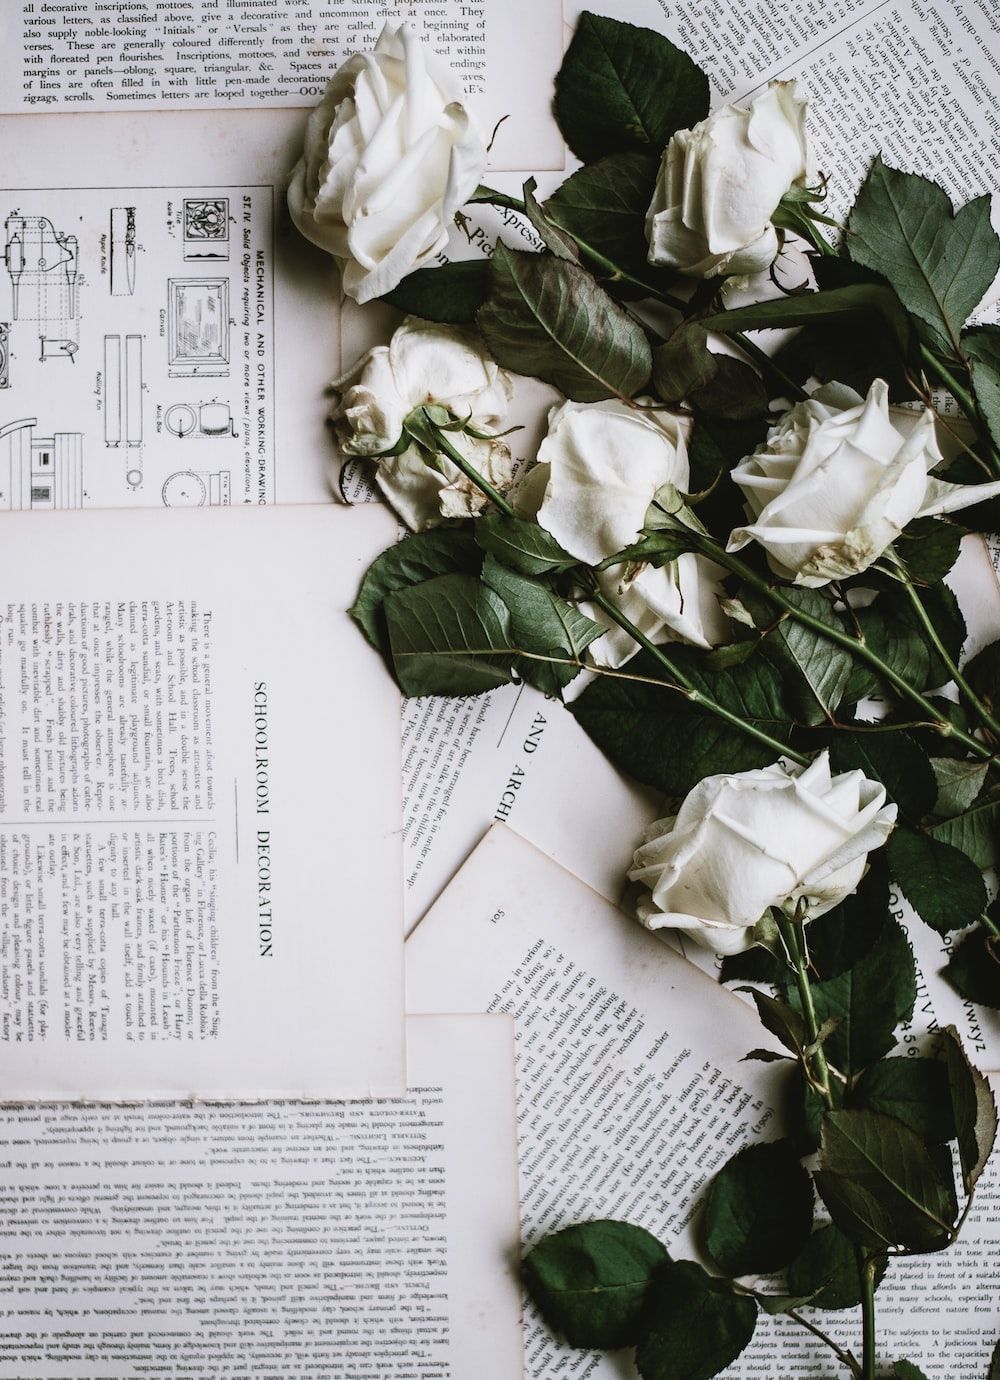  Weiße Rosen Hintergrundbild 1000x1380. Foto zum Thema Sechs weiße Rosen auf weißem Druckerpapier